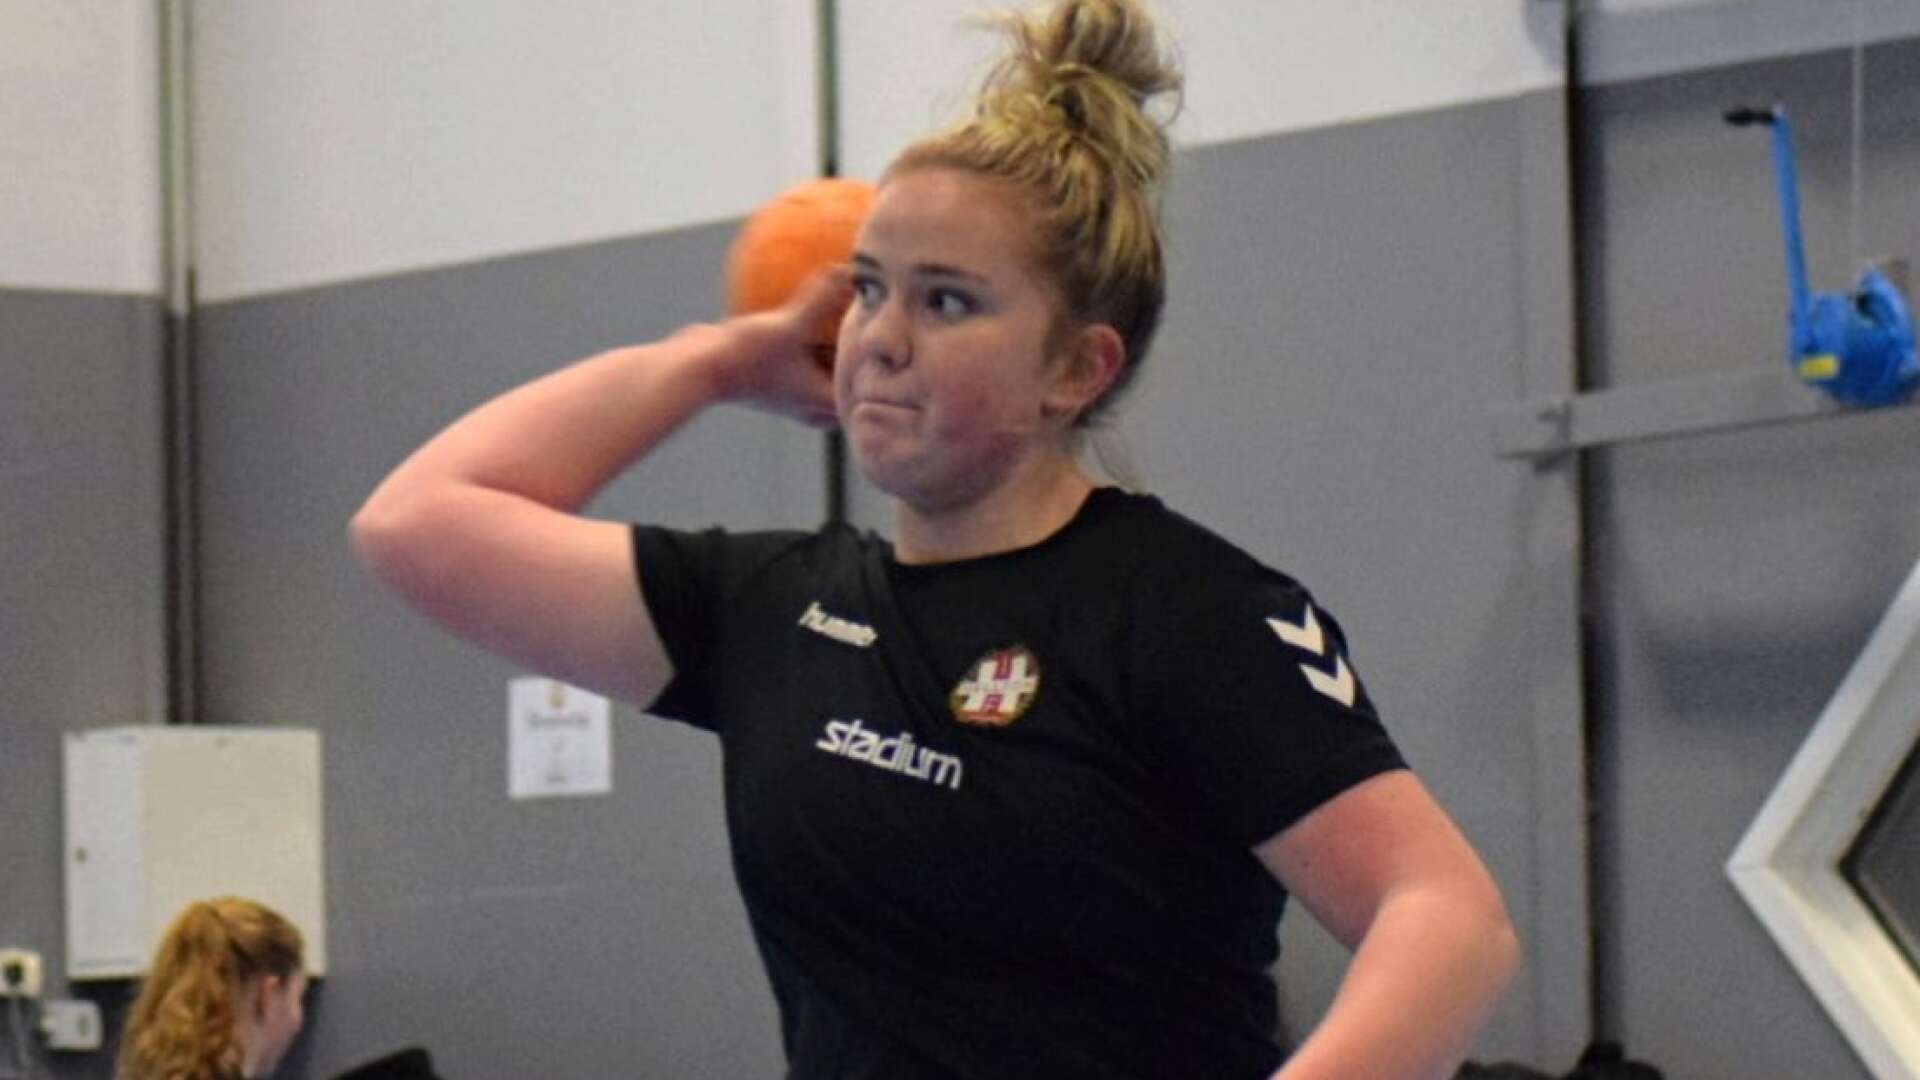 Klara Johansson från Säffle spelar handboll i Karlstadlaget Hellton IF och har nyligen blivit uttaget till Värmlandslaget samt till att spela Sverigecupen i april - ett mål som hon hoppas kan ta henne ännu ett steg närmare landslagdrömmen.